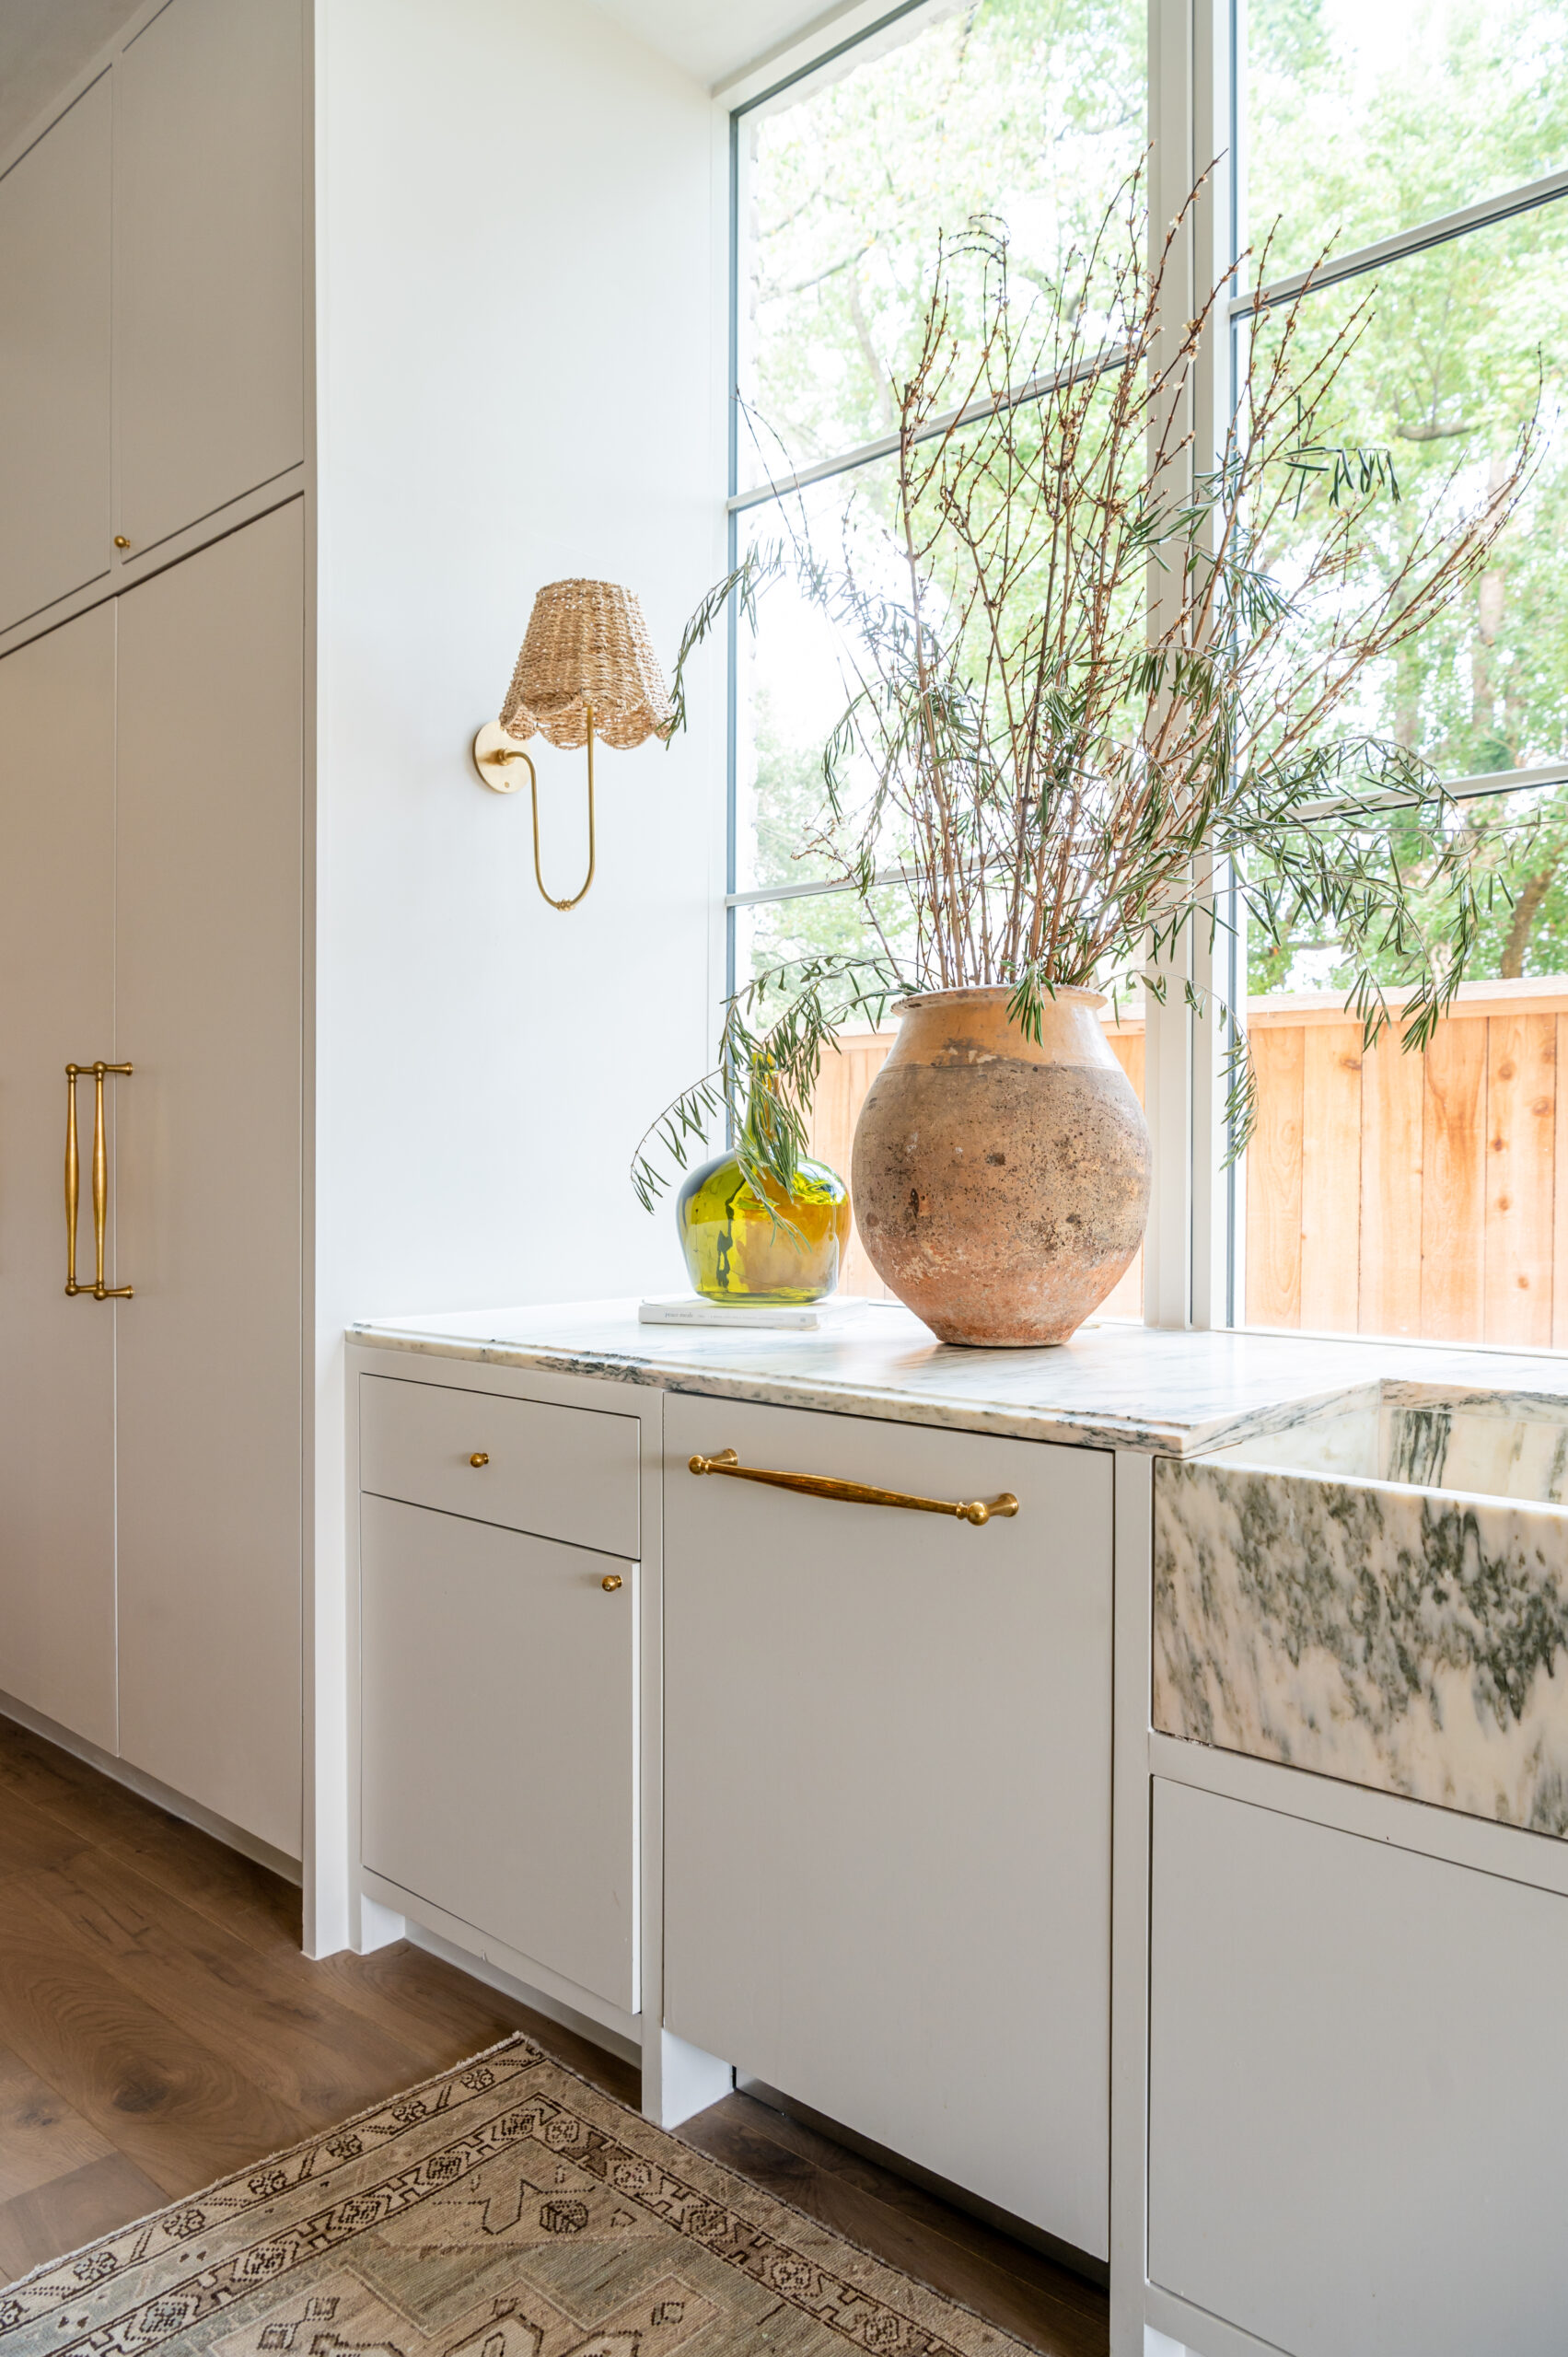 Bright, timeless kitchen interior design